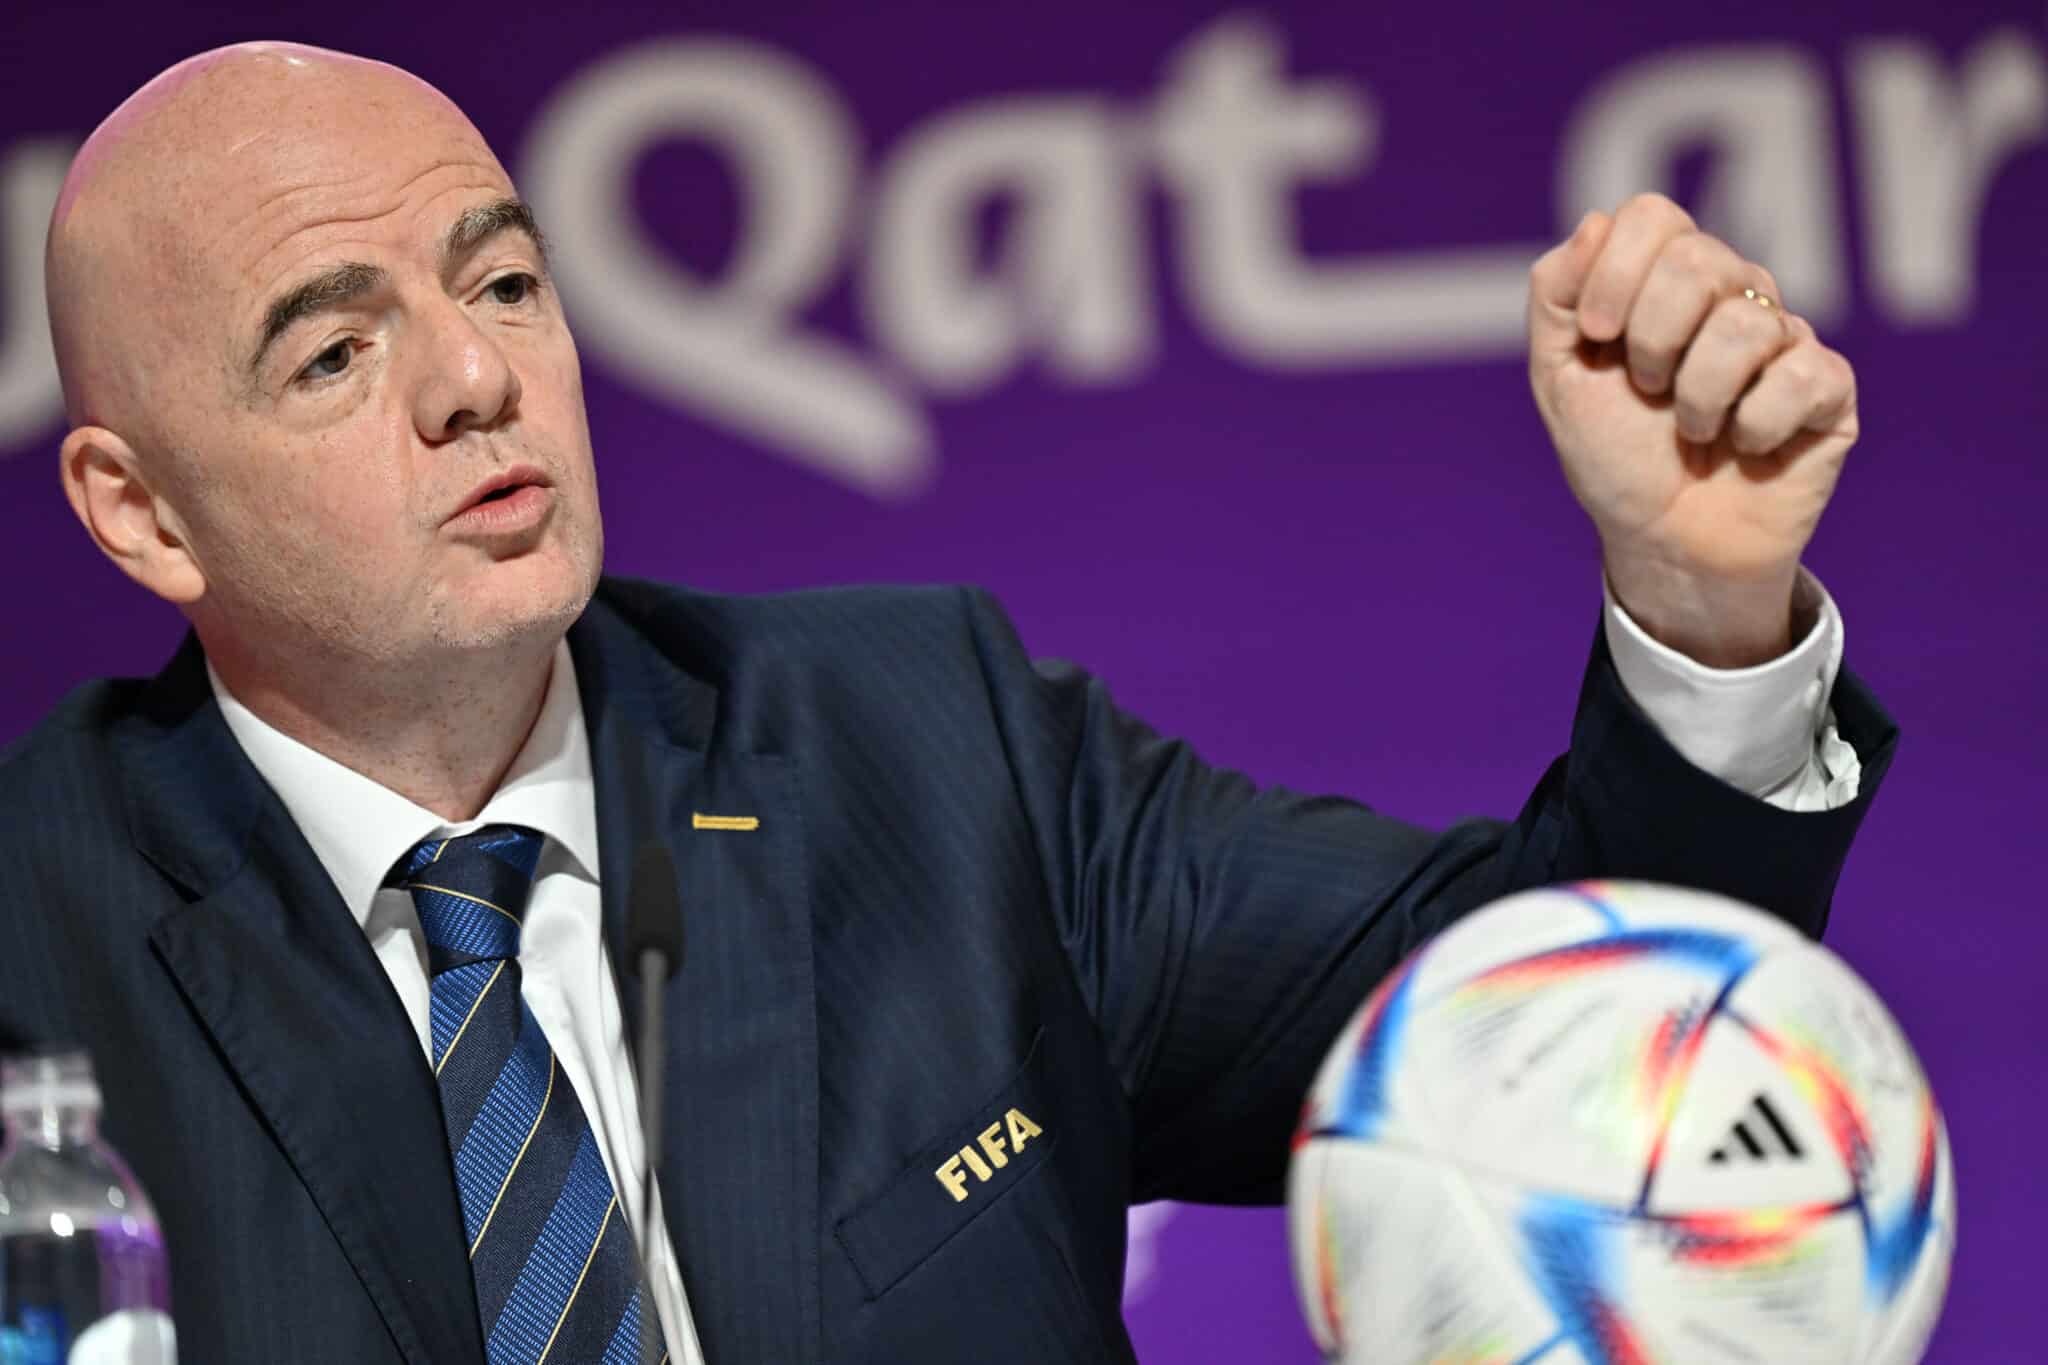 El presidente de la FIFA se burla de la homosexualidad comparándola con ser pelirrojo